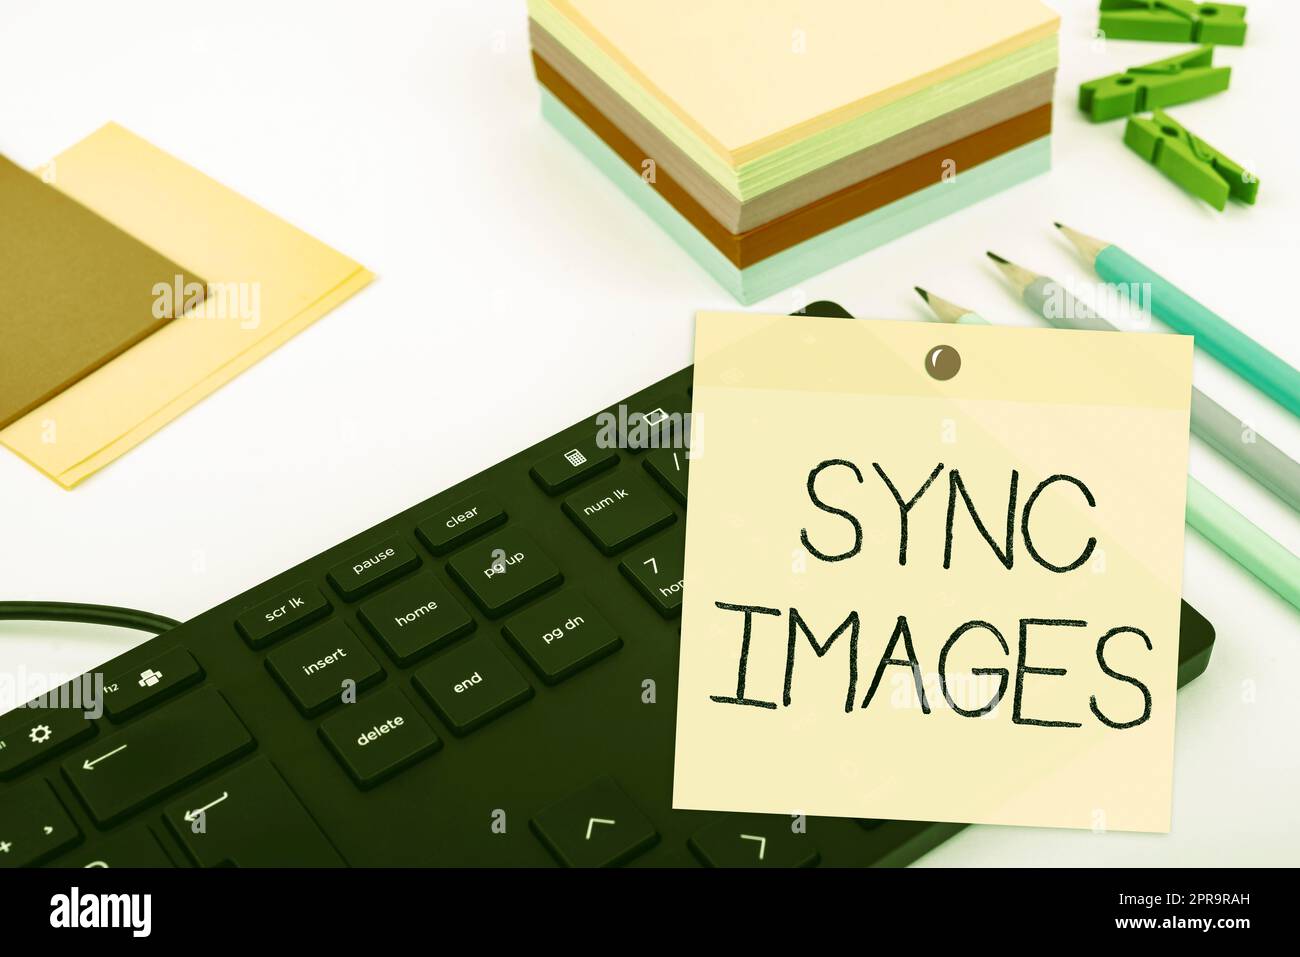 Konzeptionelle Bildunterschrift synchronisieren. Unternehmensübersicht Fotos auf allen Geräten identisch machen, auf die überall zugegriffen werden kann Computertastatur und Symbol.Informationsmedium für die Kommunikation. Stockfoto